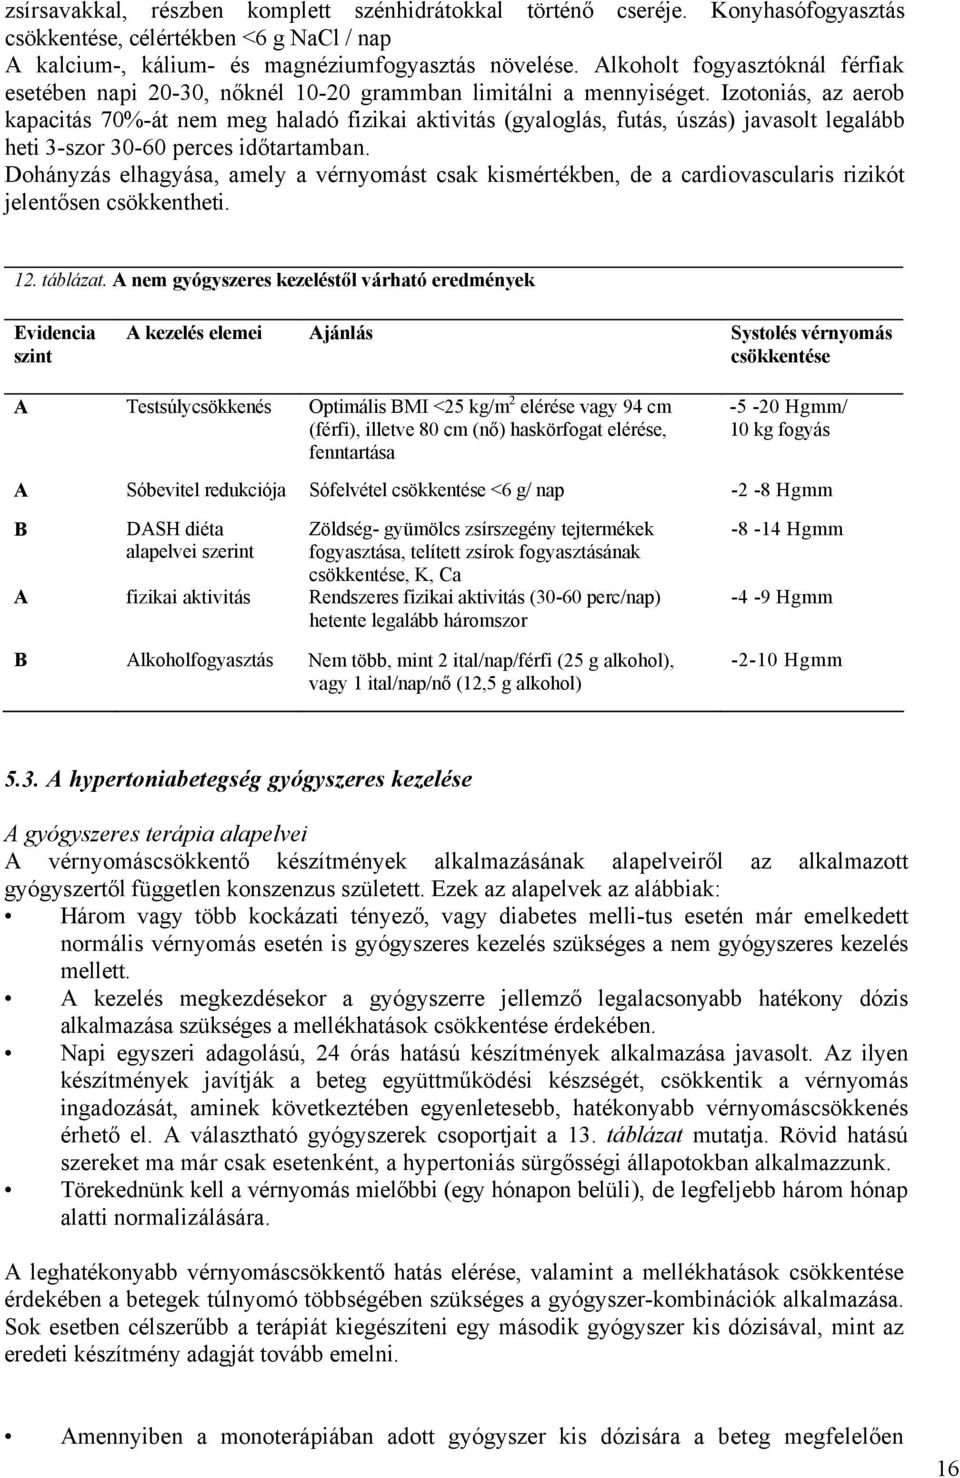 klinikai irányelvek a magas vérnyomás kezelésére)